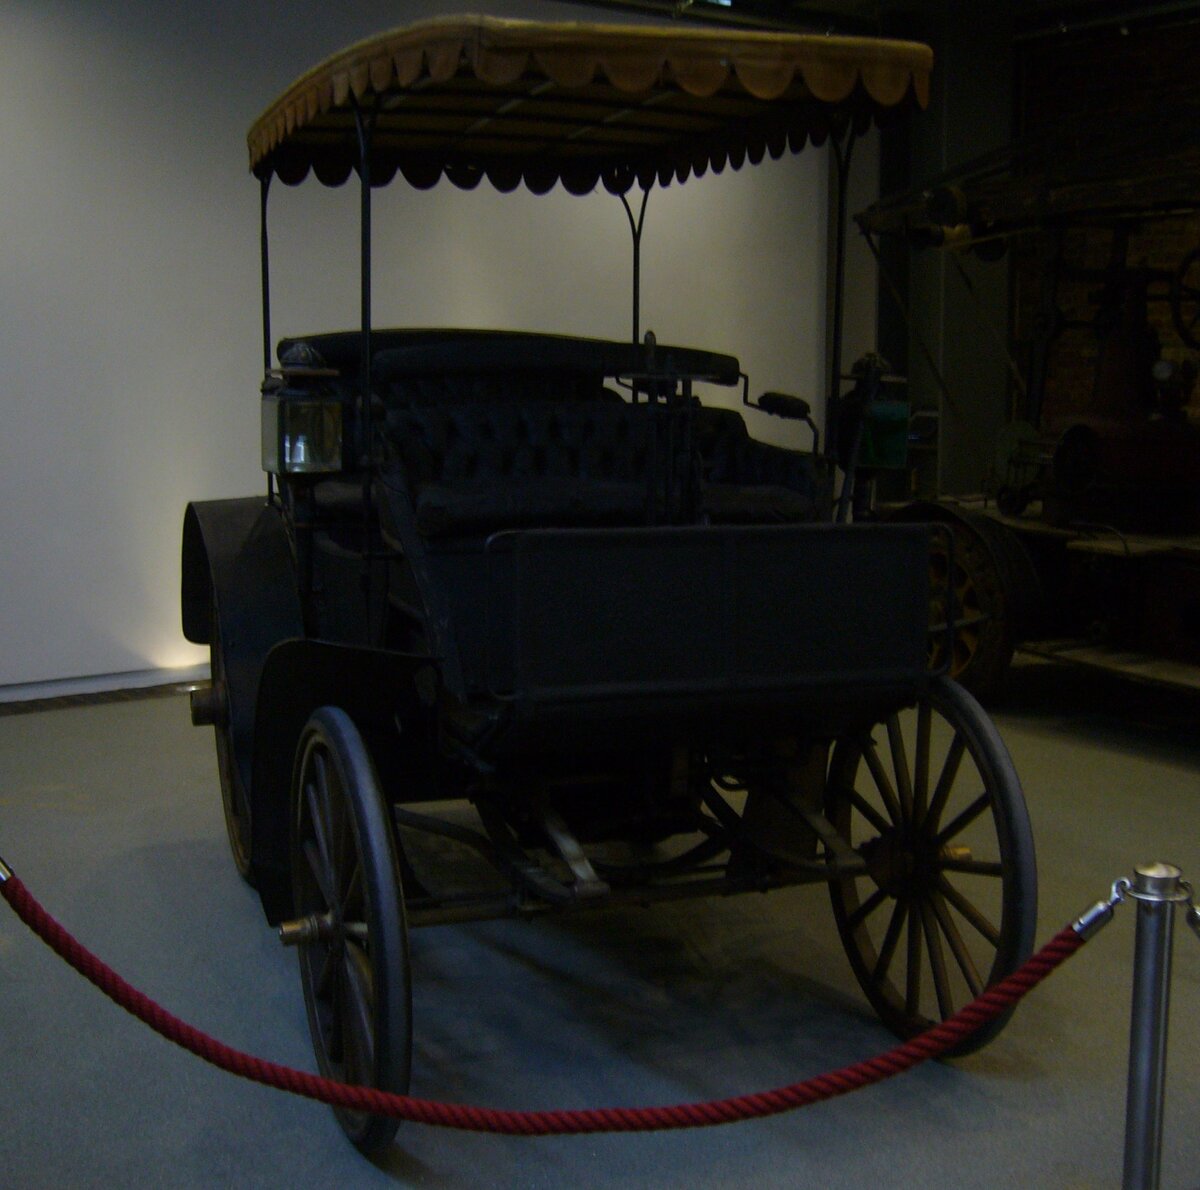 Benz Victoria Phaeton aus dem Jahr 1895. Das Modell  Victoria  der Carl Benz Motorengesellschaft war eine Weiterentwicklung des ersten, damals noch dreirädrigen, Benz-Motorwagens aus dem 1886. Er ist somit auch der erste vierrädrige Wagen aus dem Hause Benz. Dieser Wagen hat seit seiner Herstellung im Jahr 1895 nur zwei Vorbesitzer gehabt, nämlich die Familie Benz und einen gewissen Henry Ford. Dieser hat das Auto in den 1920´er Jahren für sein Automuseum gekauft. Später wurde das Fahrzeug nach Deutschland zurück verkauft. Der im Heck verbaute Einzylinderviertaktmotor hat einen Hubraum von 2650 cm³ mit einer Leistung von 5 PS. Er kann das Auto bis auf eine Geschwindigkeit von 30 km/h beschleunigen. Nationales Automuseum/Loh Collection am 08.11.2023.